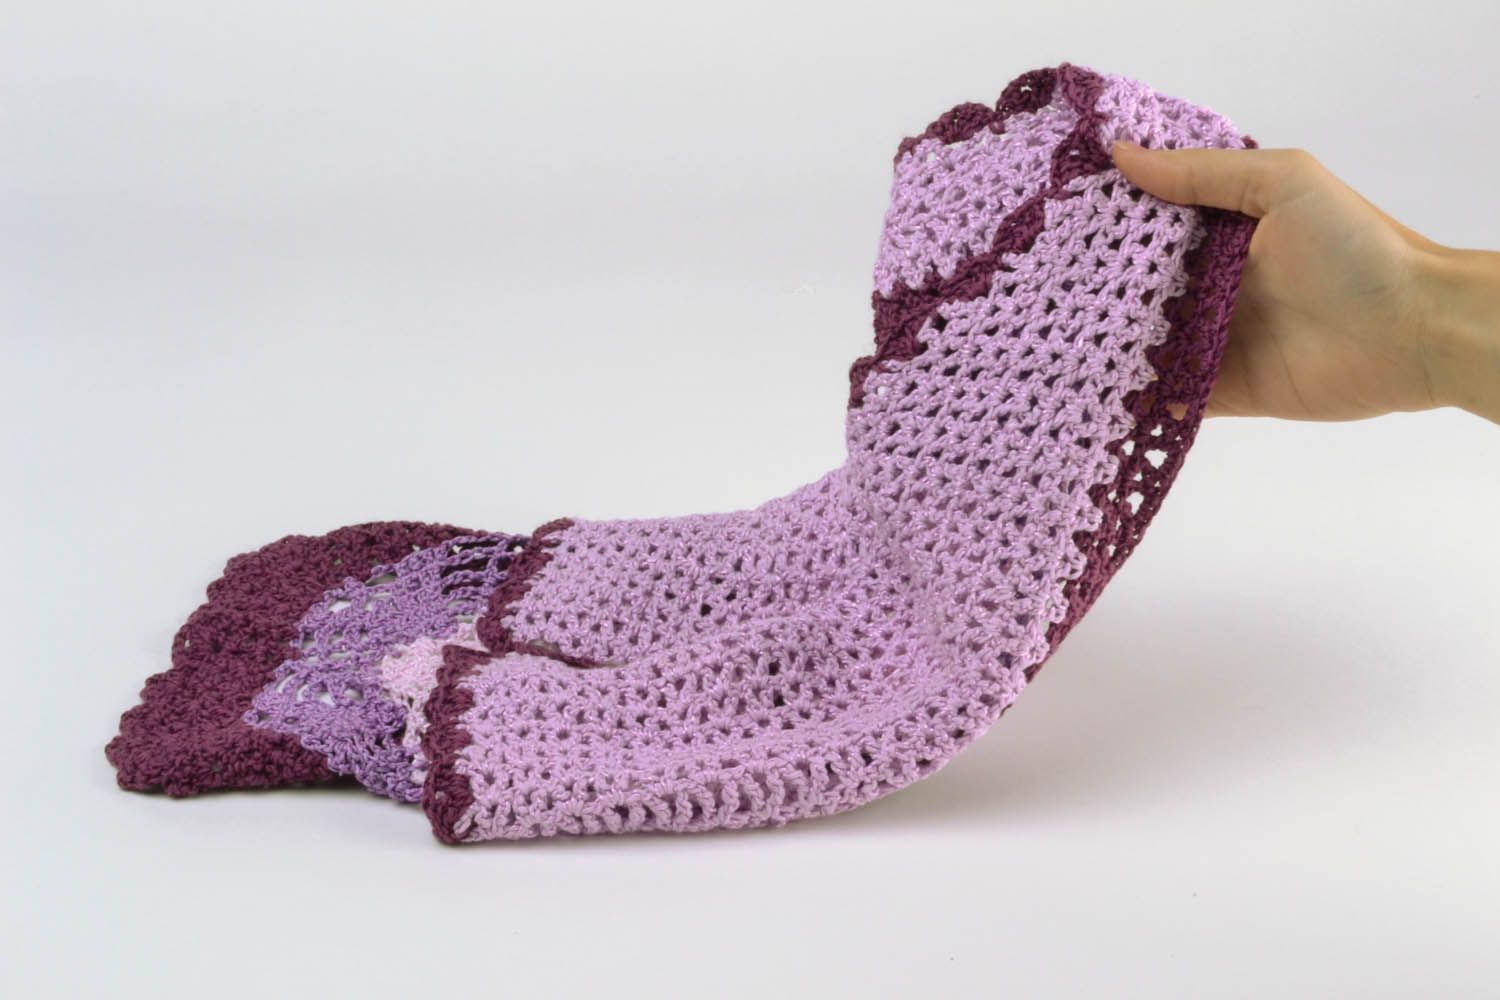 Violet crochet lace top photo 5